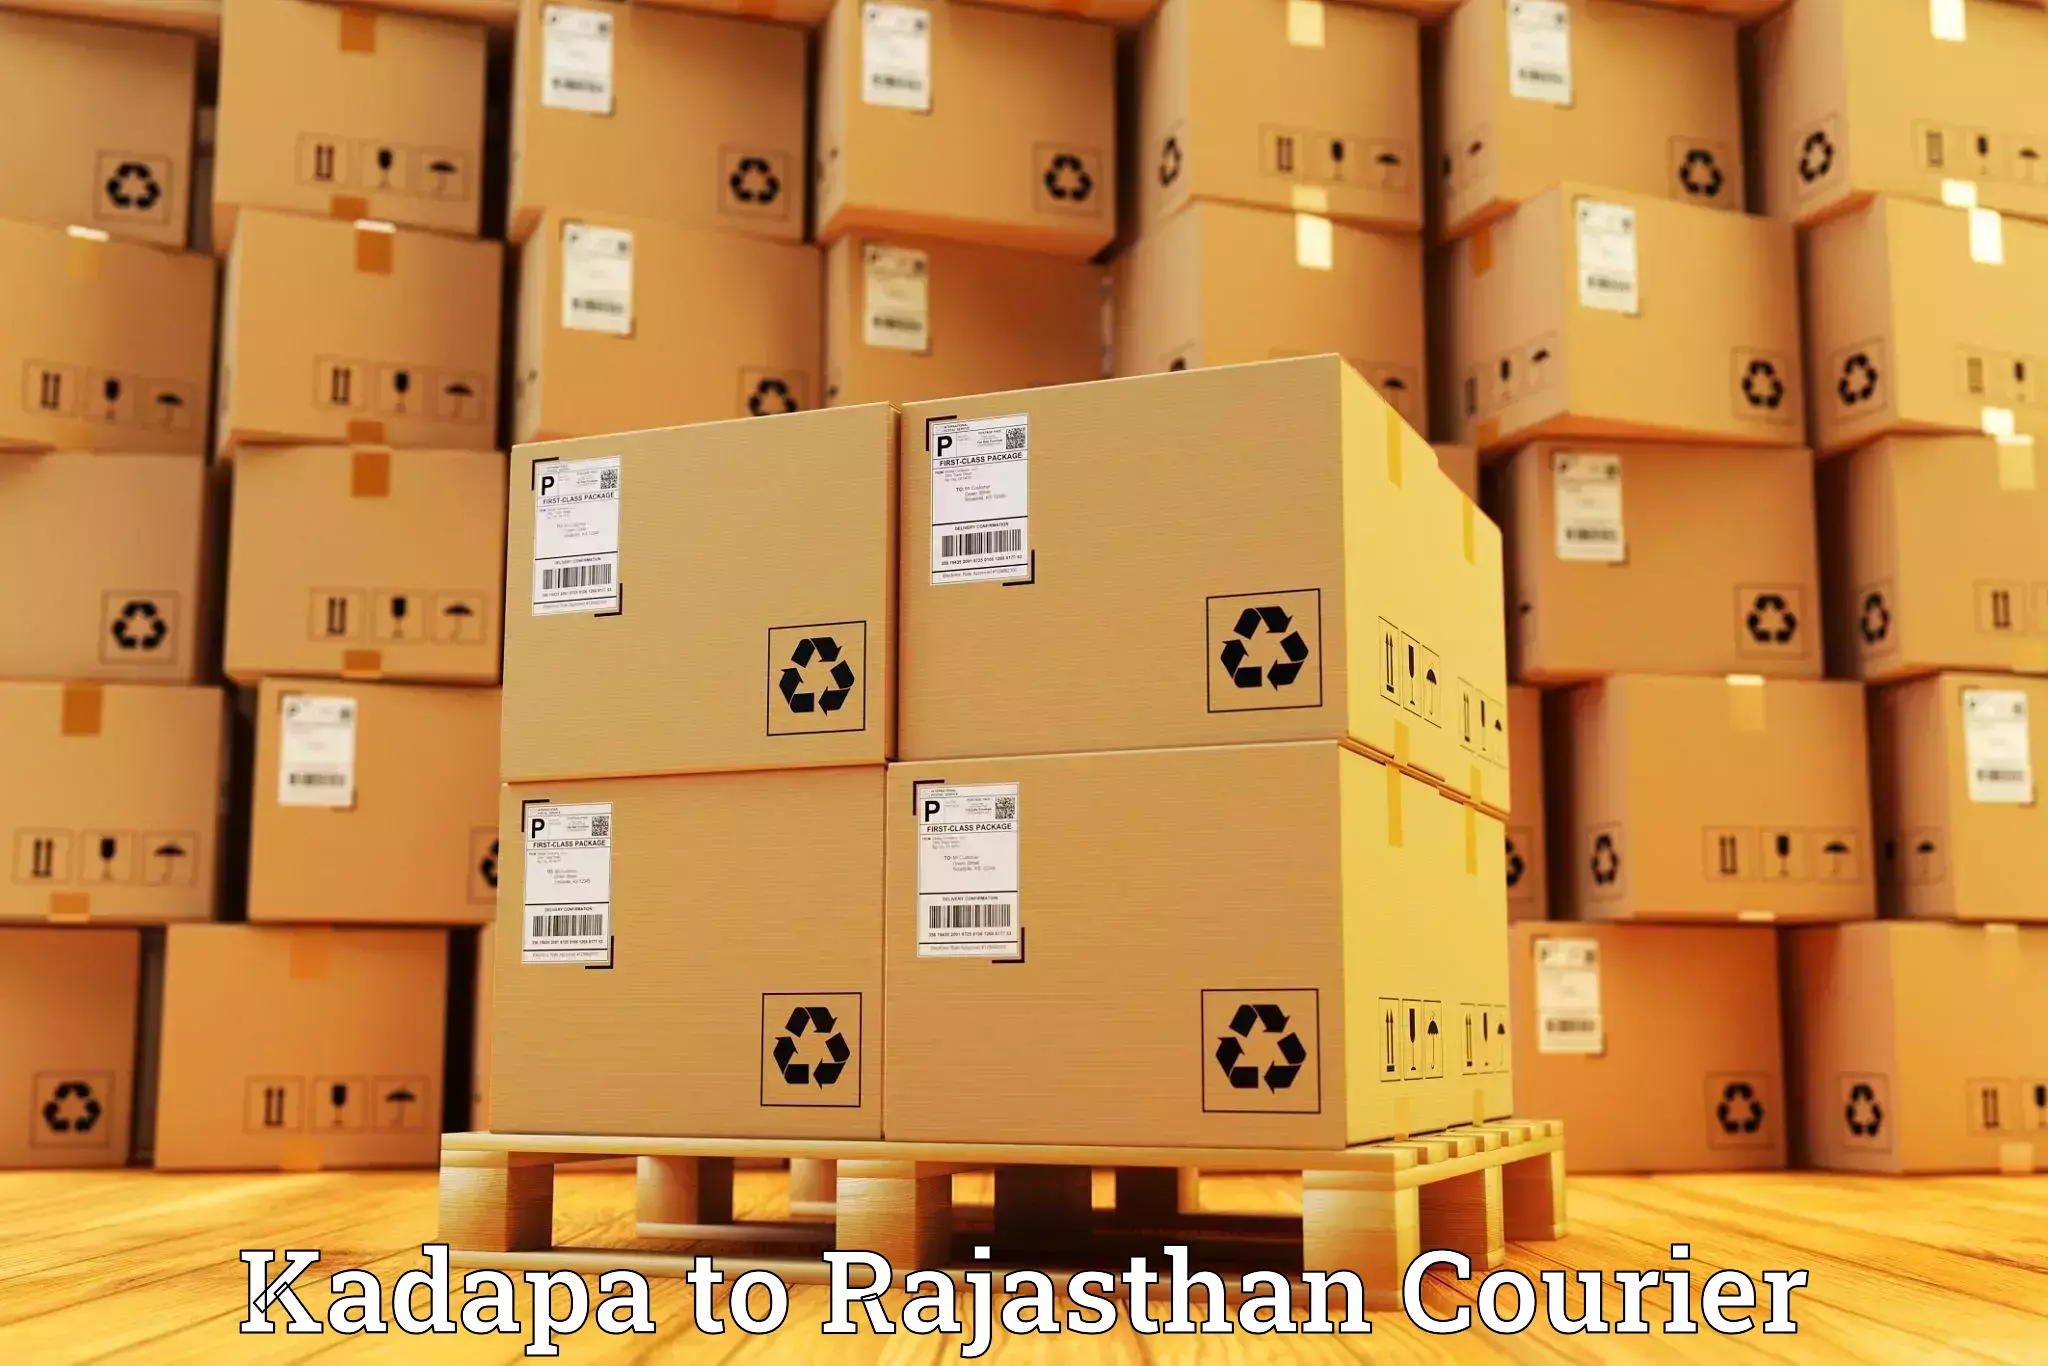 Express postal services Kadapa to Sultana